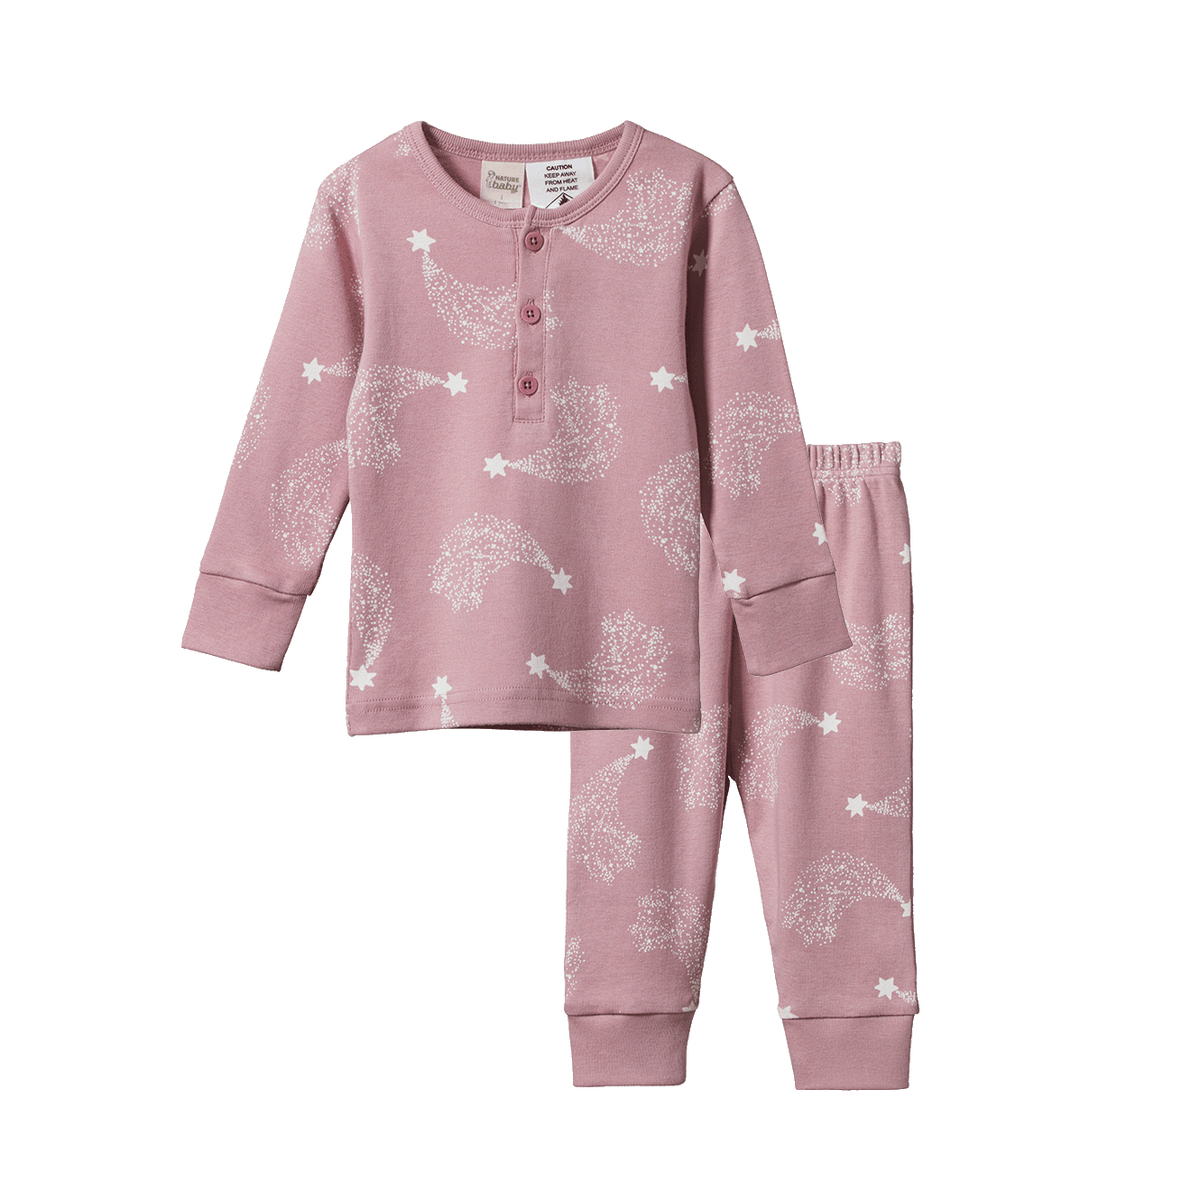 Nature Baby 2PC Long Sleeve Pajamas Stardust Print